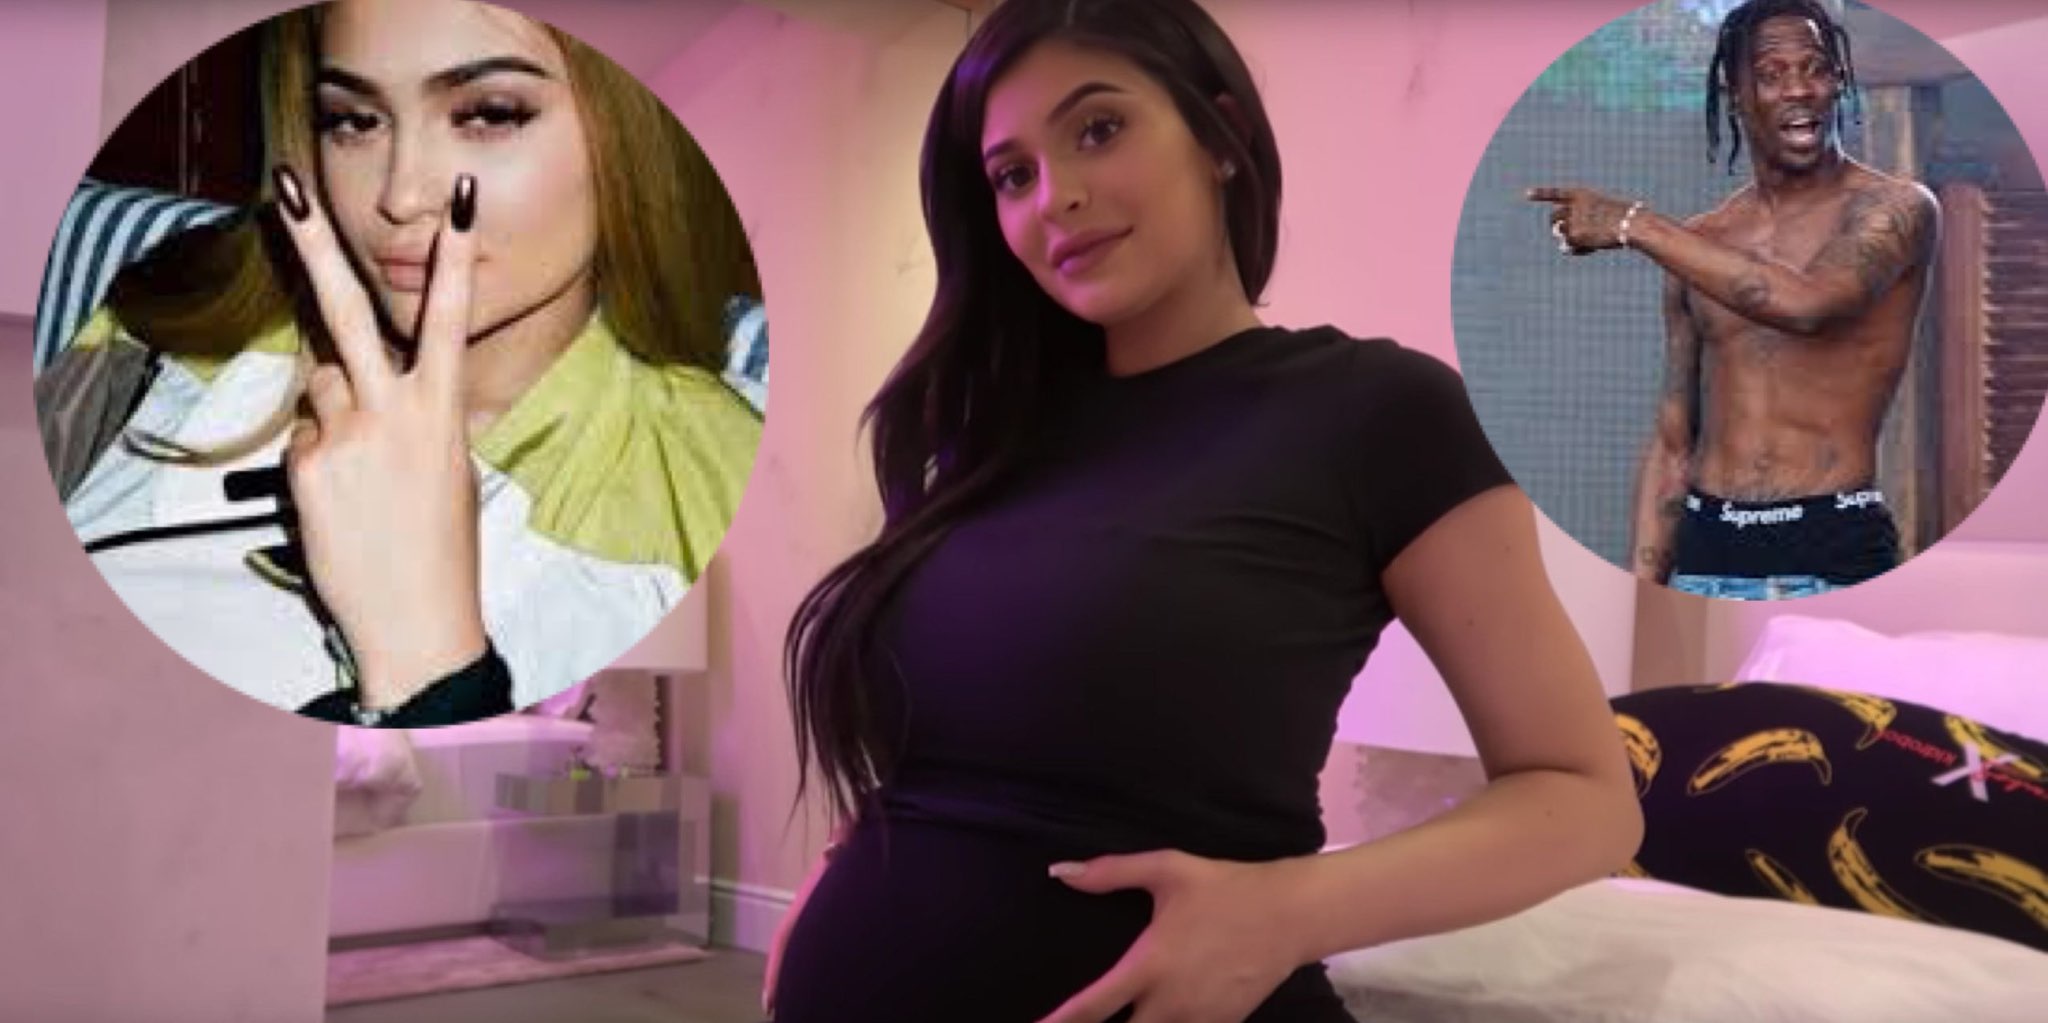 Kylie Jenner Pregnant